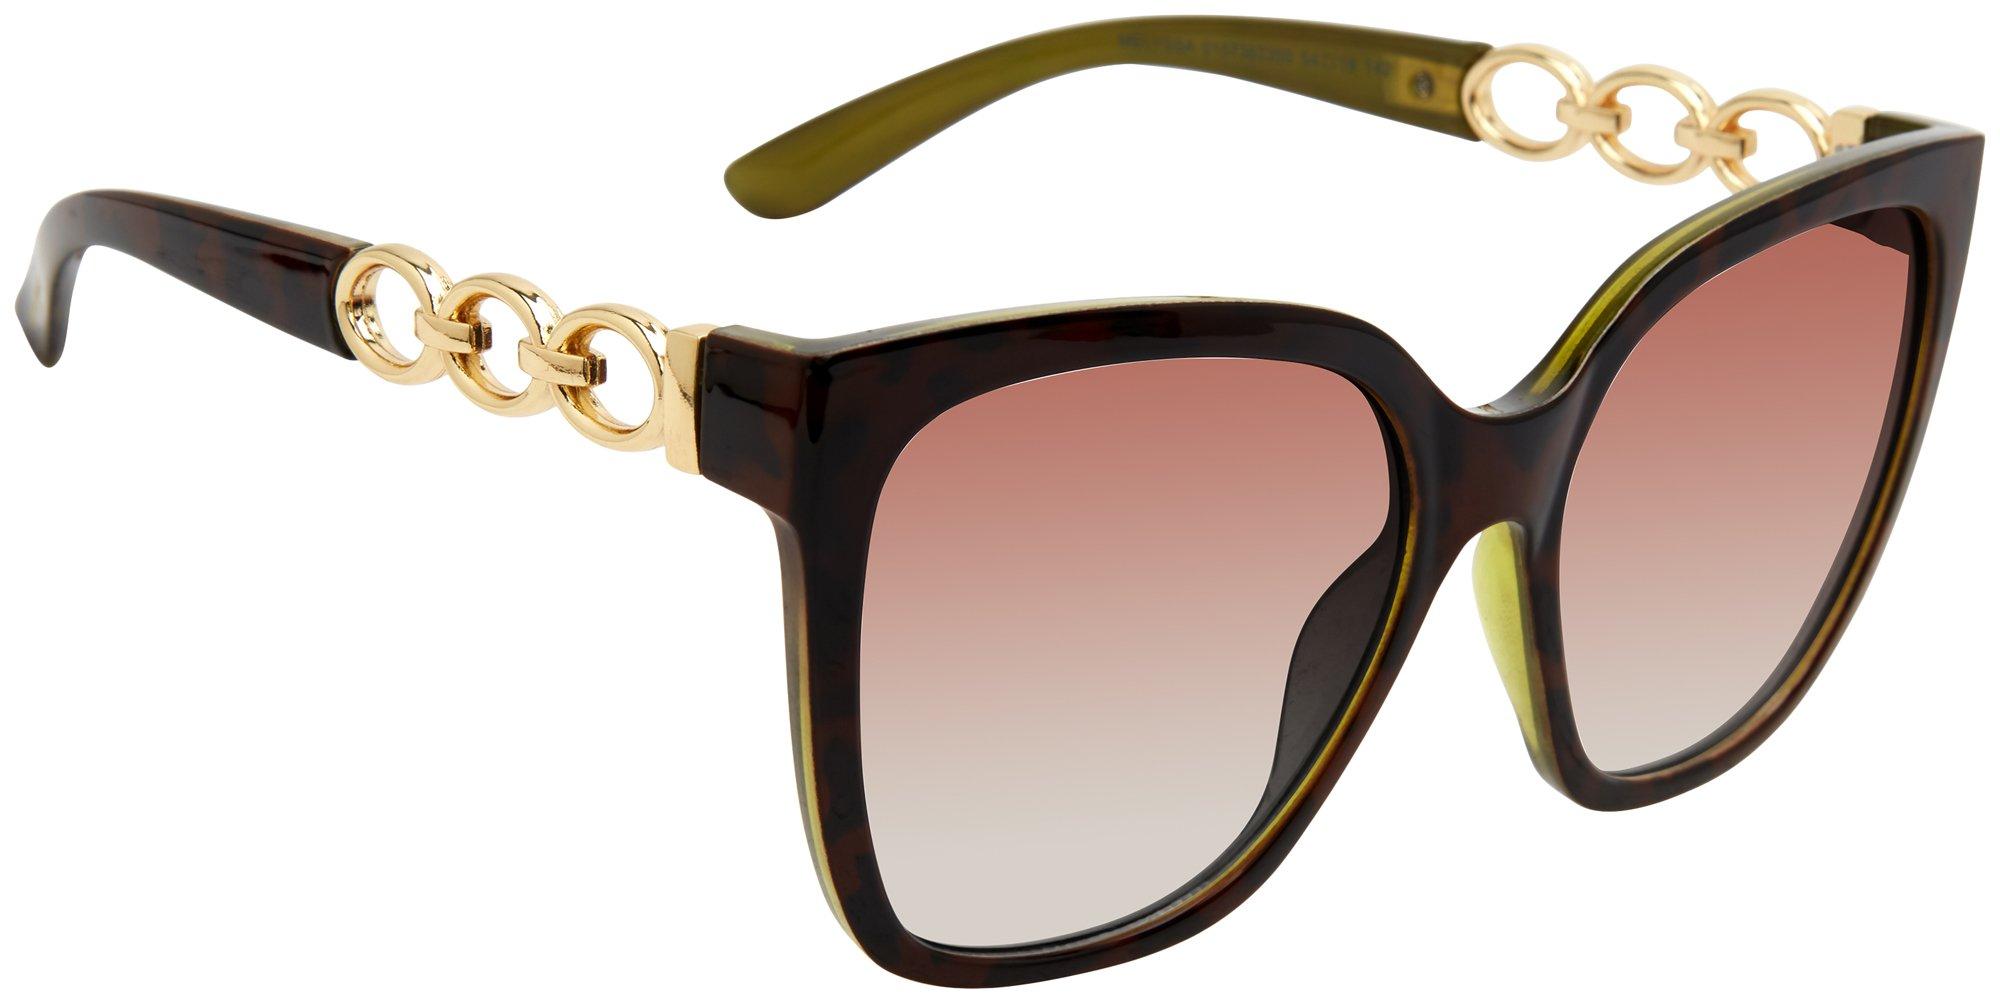 Steve Madden Womens Tortoiseshell Square Link Sunglasses